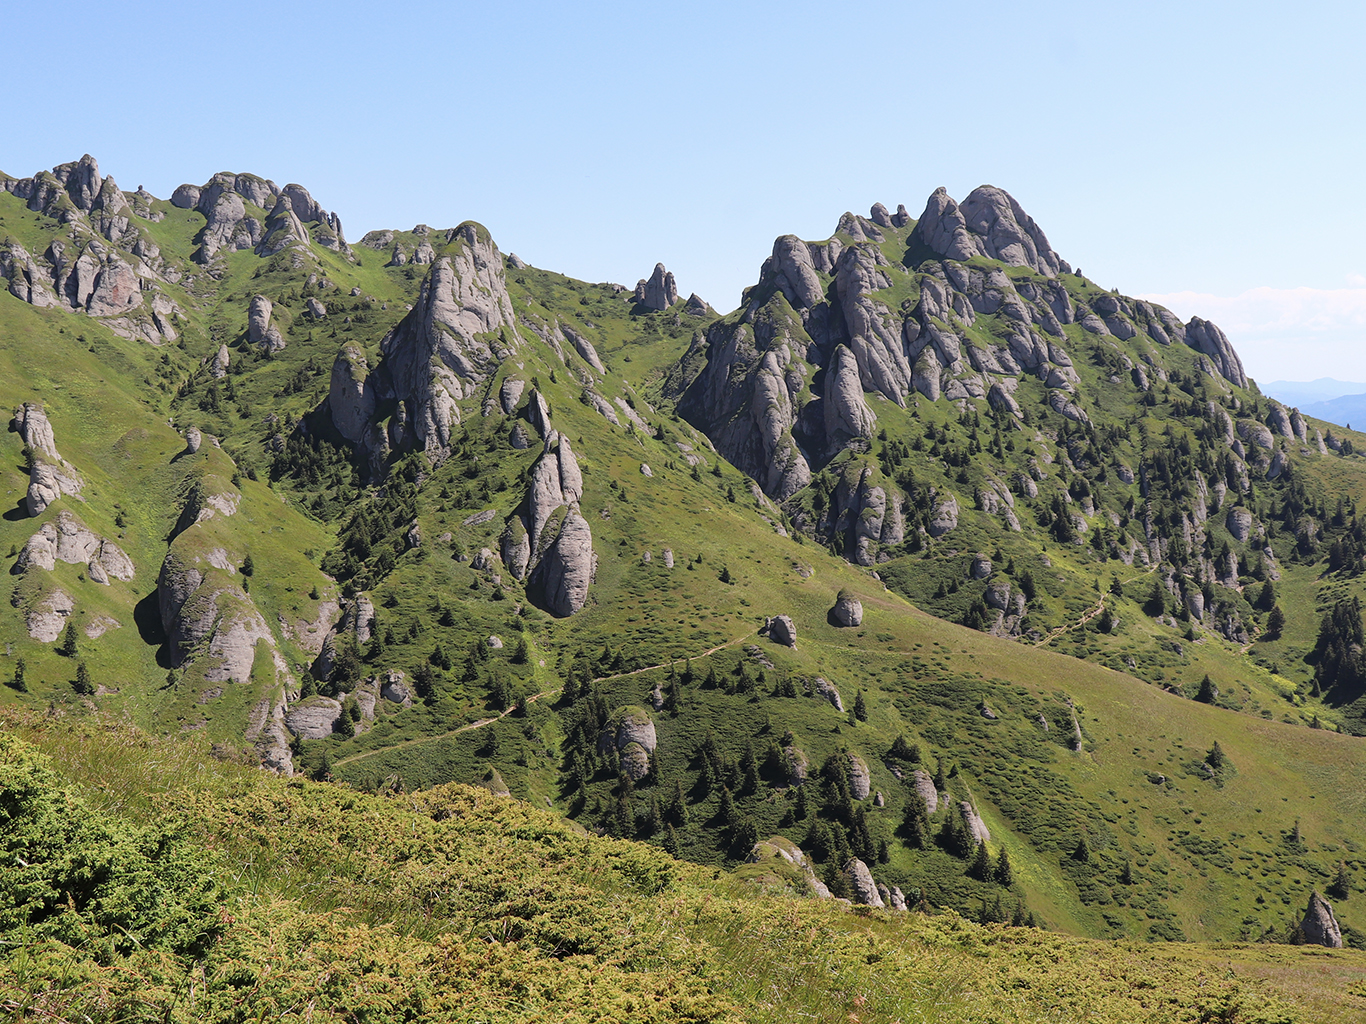 Pro pohoří Ciucaş jsou typické erozí vzniklé skalní útvary